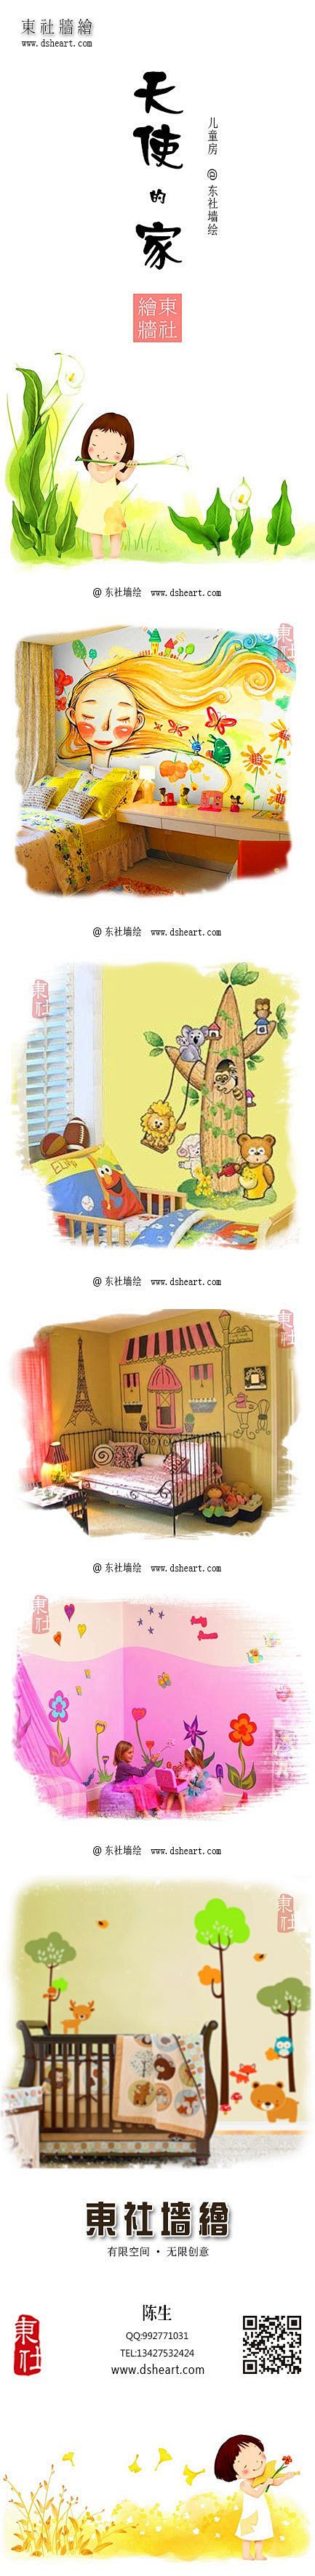 可爱儿童房，卡通婴儿房，好玩的墙绘，广州...